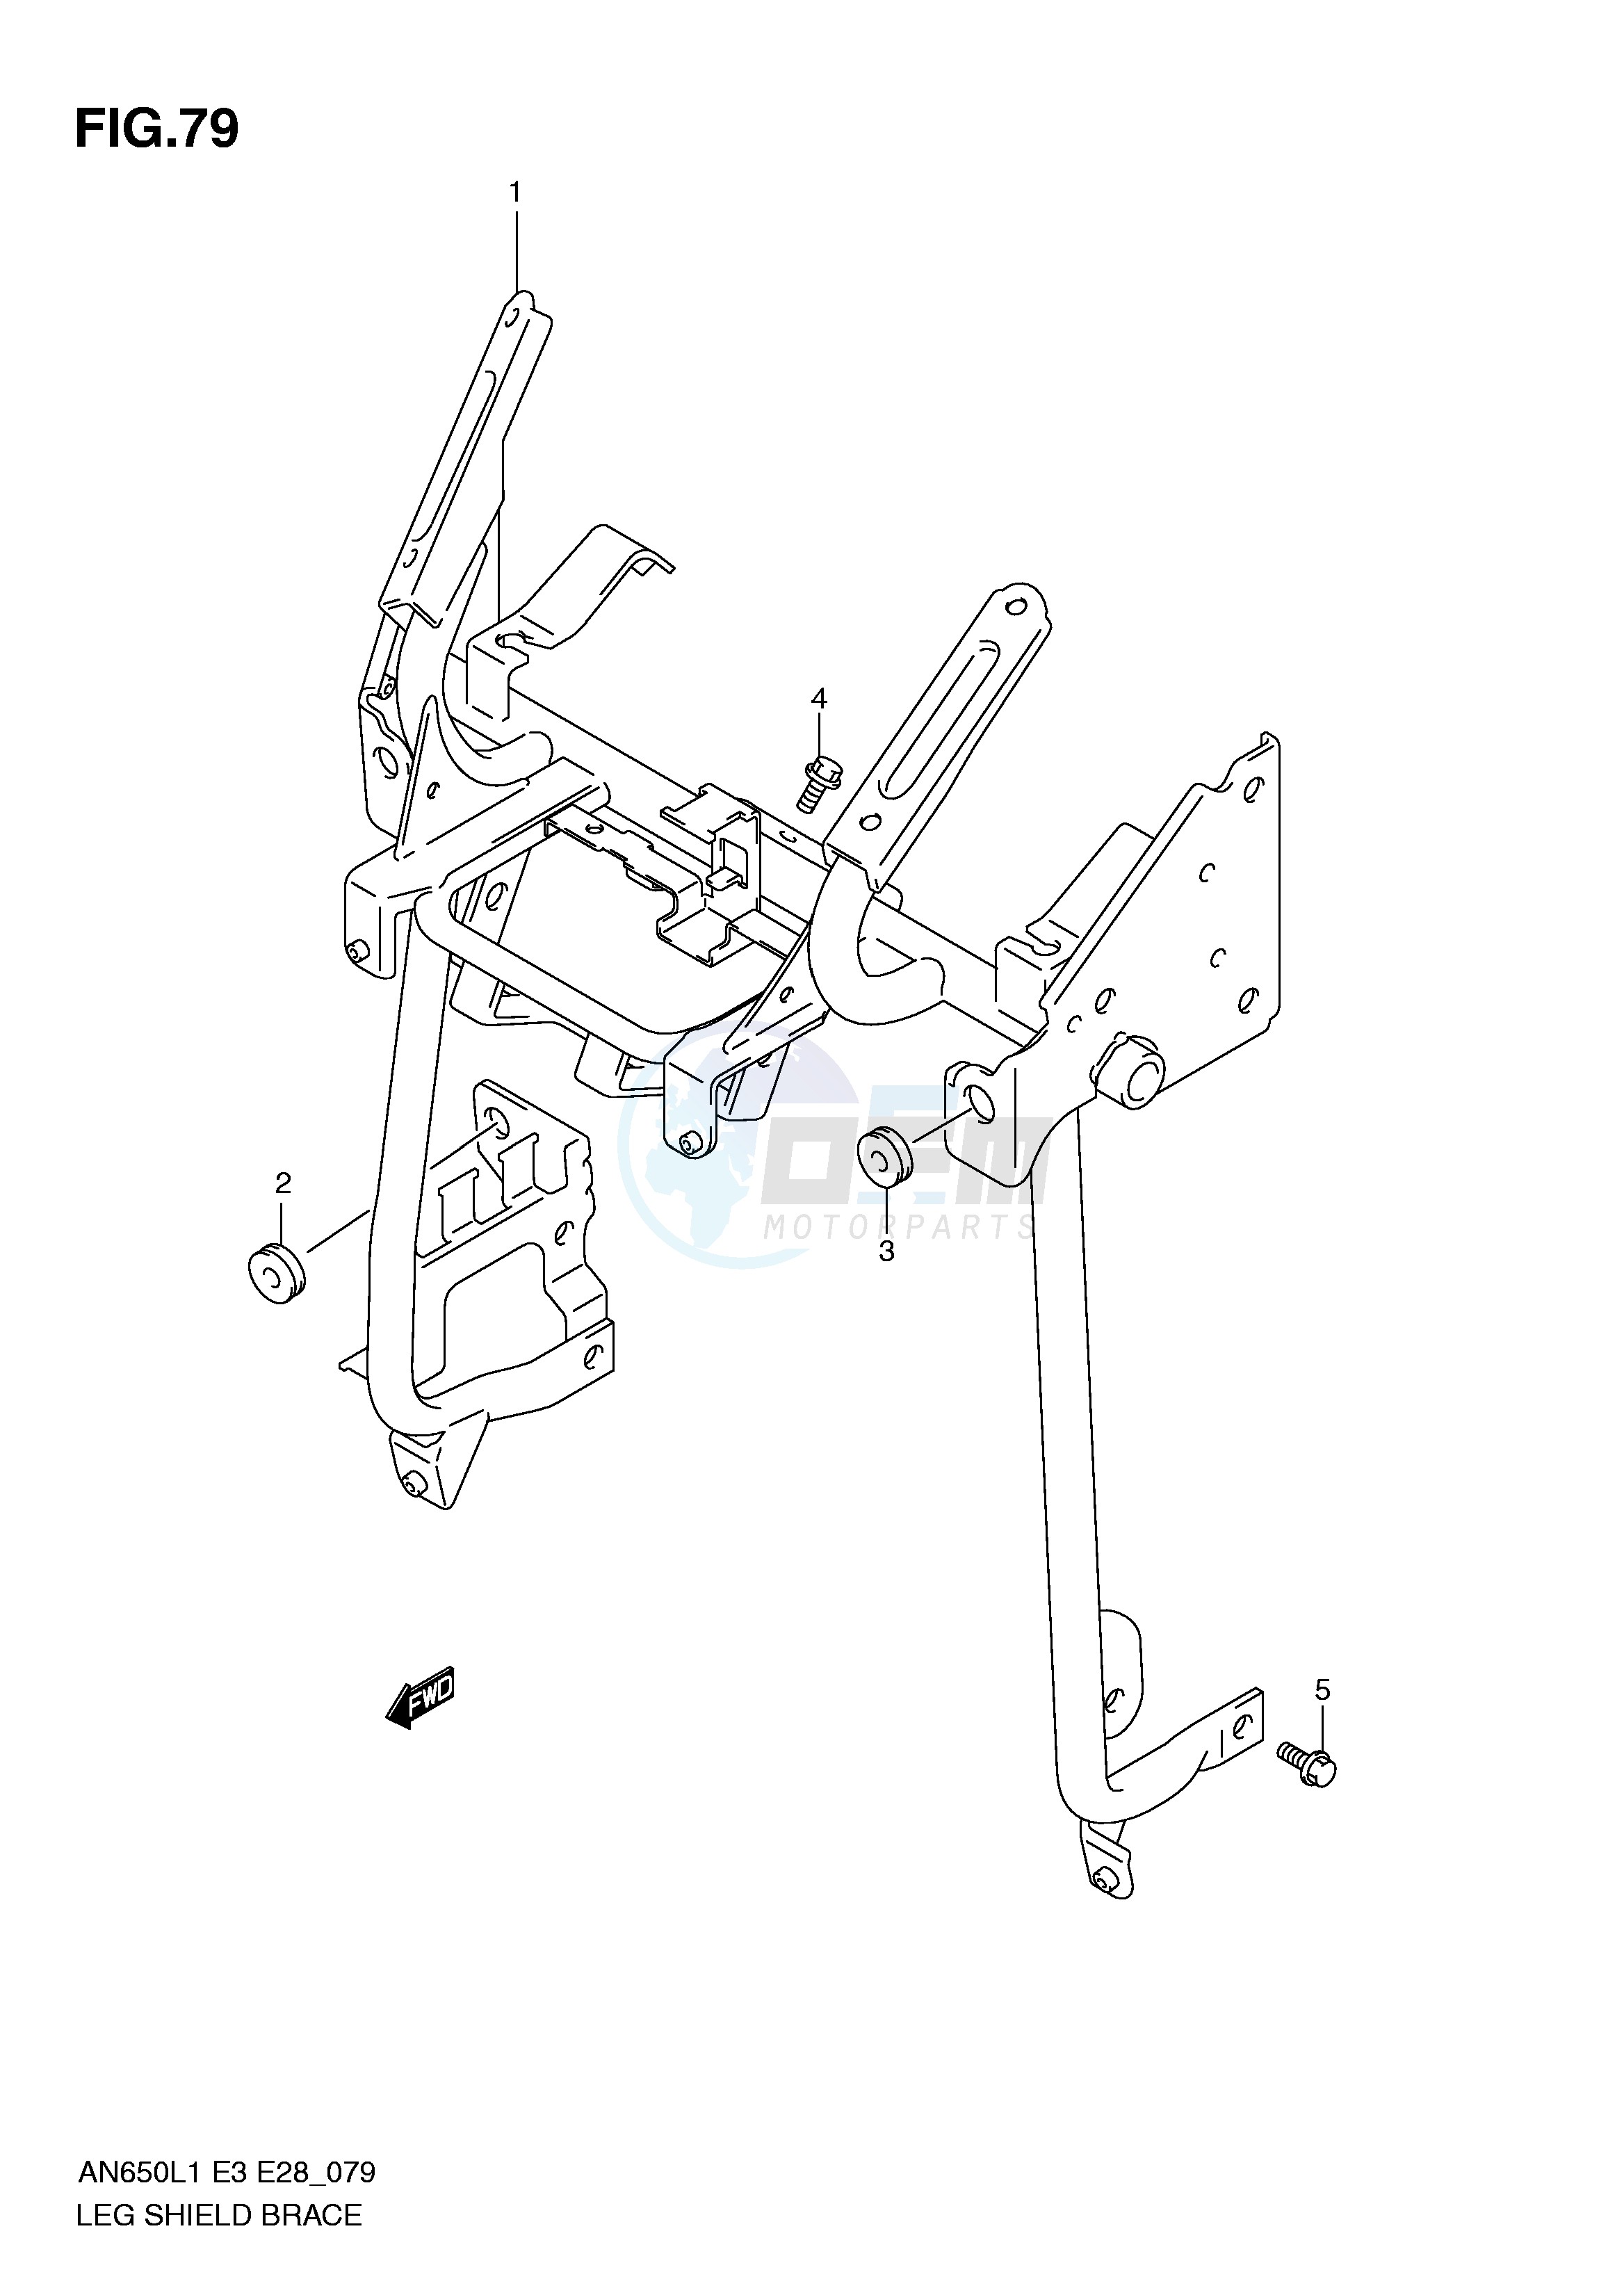 LEG SHIELD BRACE (AN650L1 E33) blueprint